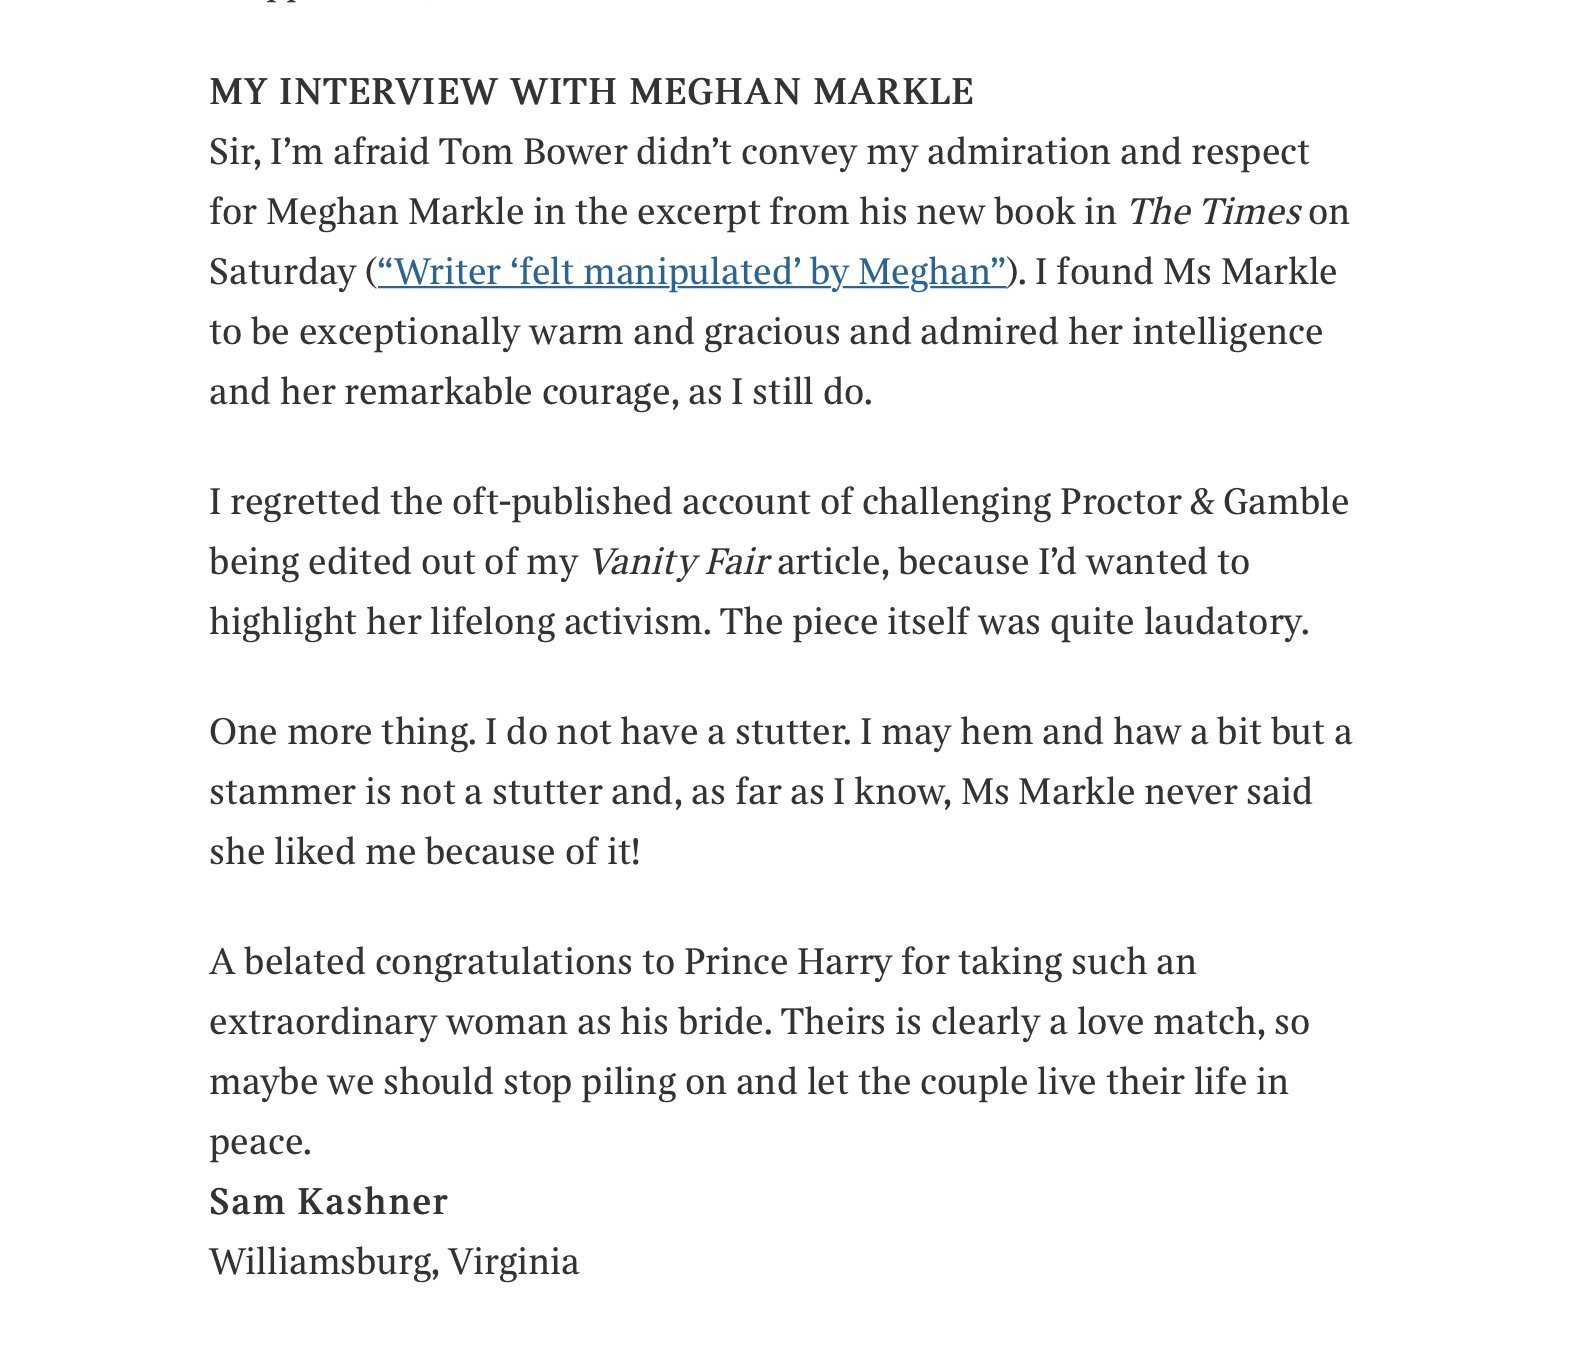 Full text of journalist Sam Kashners letter defending Meghan Markle